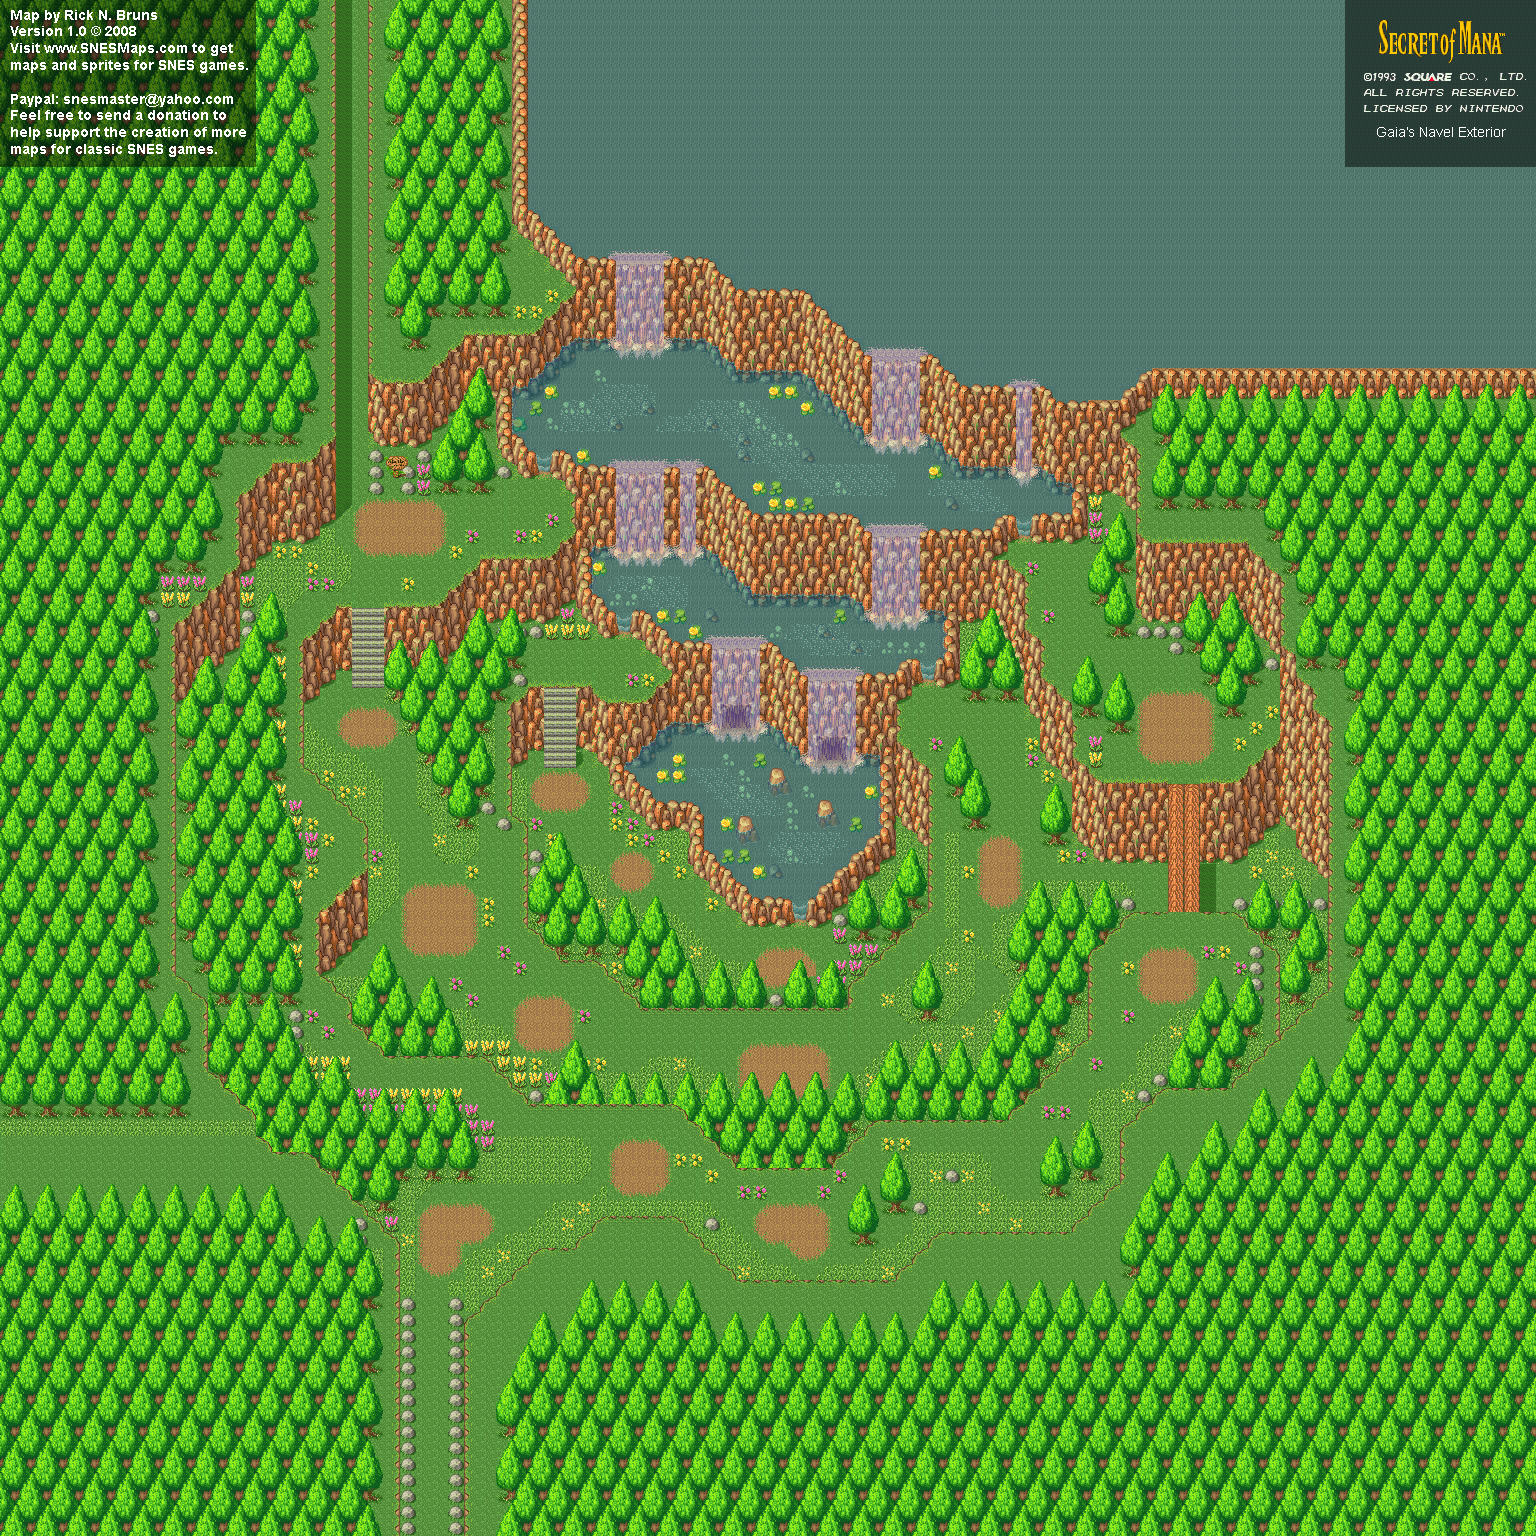 Secret of Mana - Gaia's Navel Exterior - Super Nintendo SNES Background Map